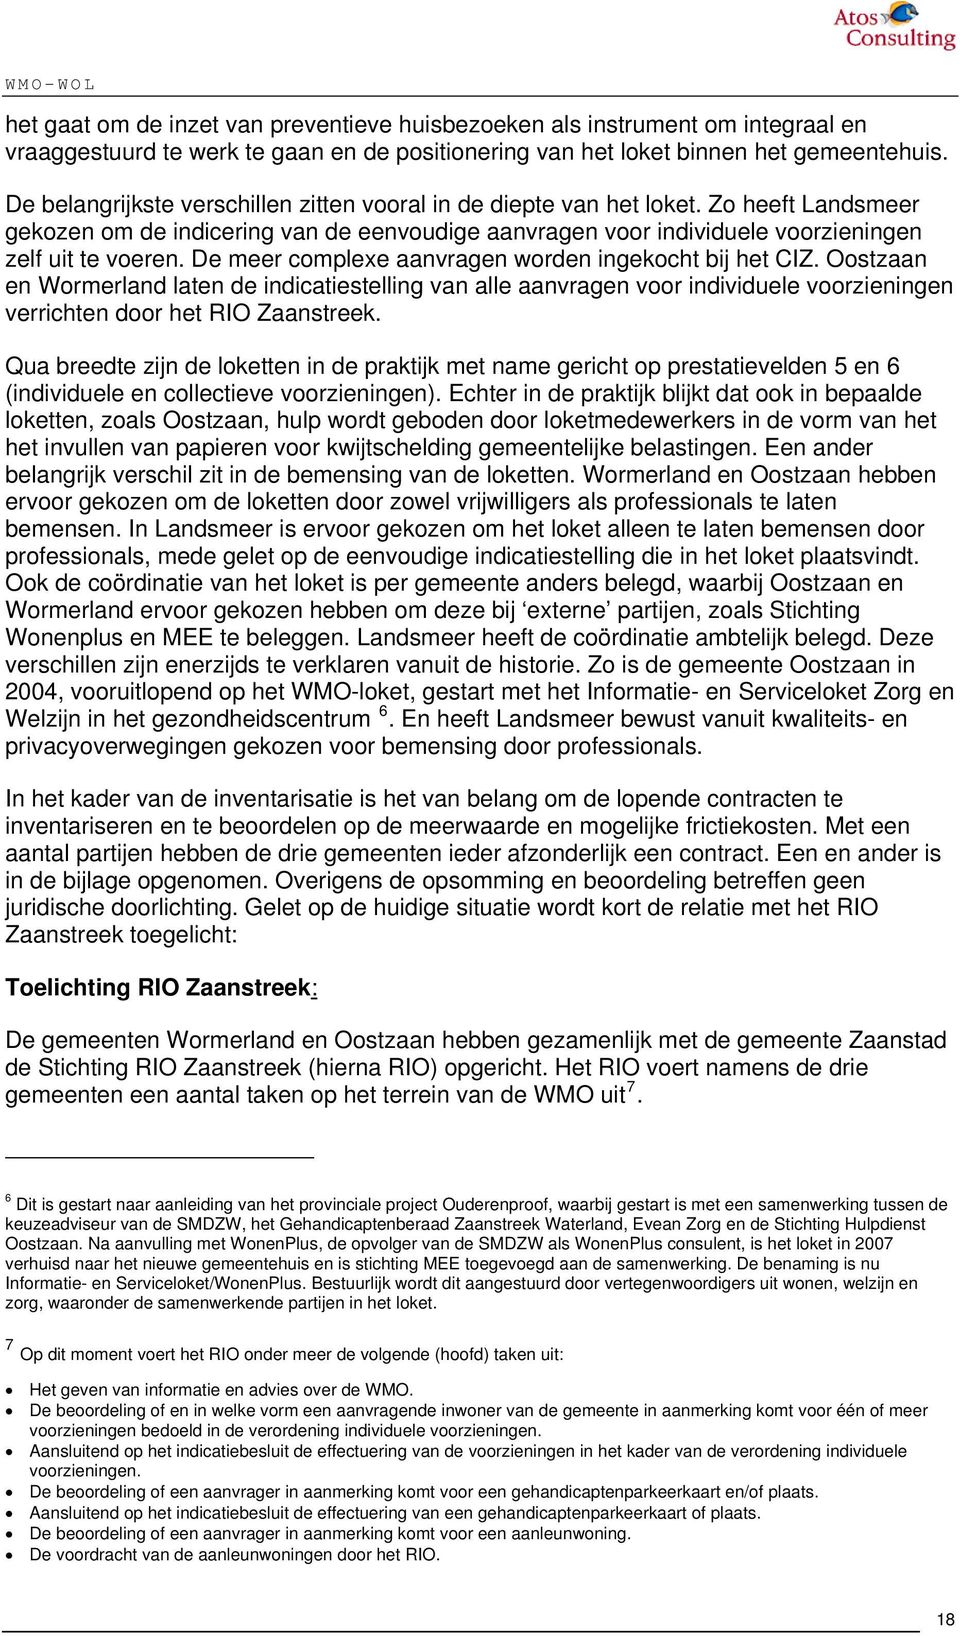 De meer complexe aanvragen worden ingekocht bij het CIZ. Oostzaan en Wormerland laten de indicatiestelling van alle aanvragen voor individuele voorzieningen verrichten door het RIO Zaanstreek.